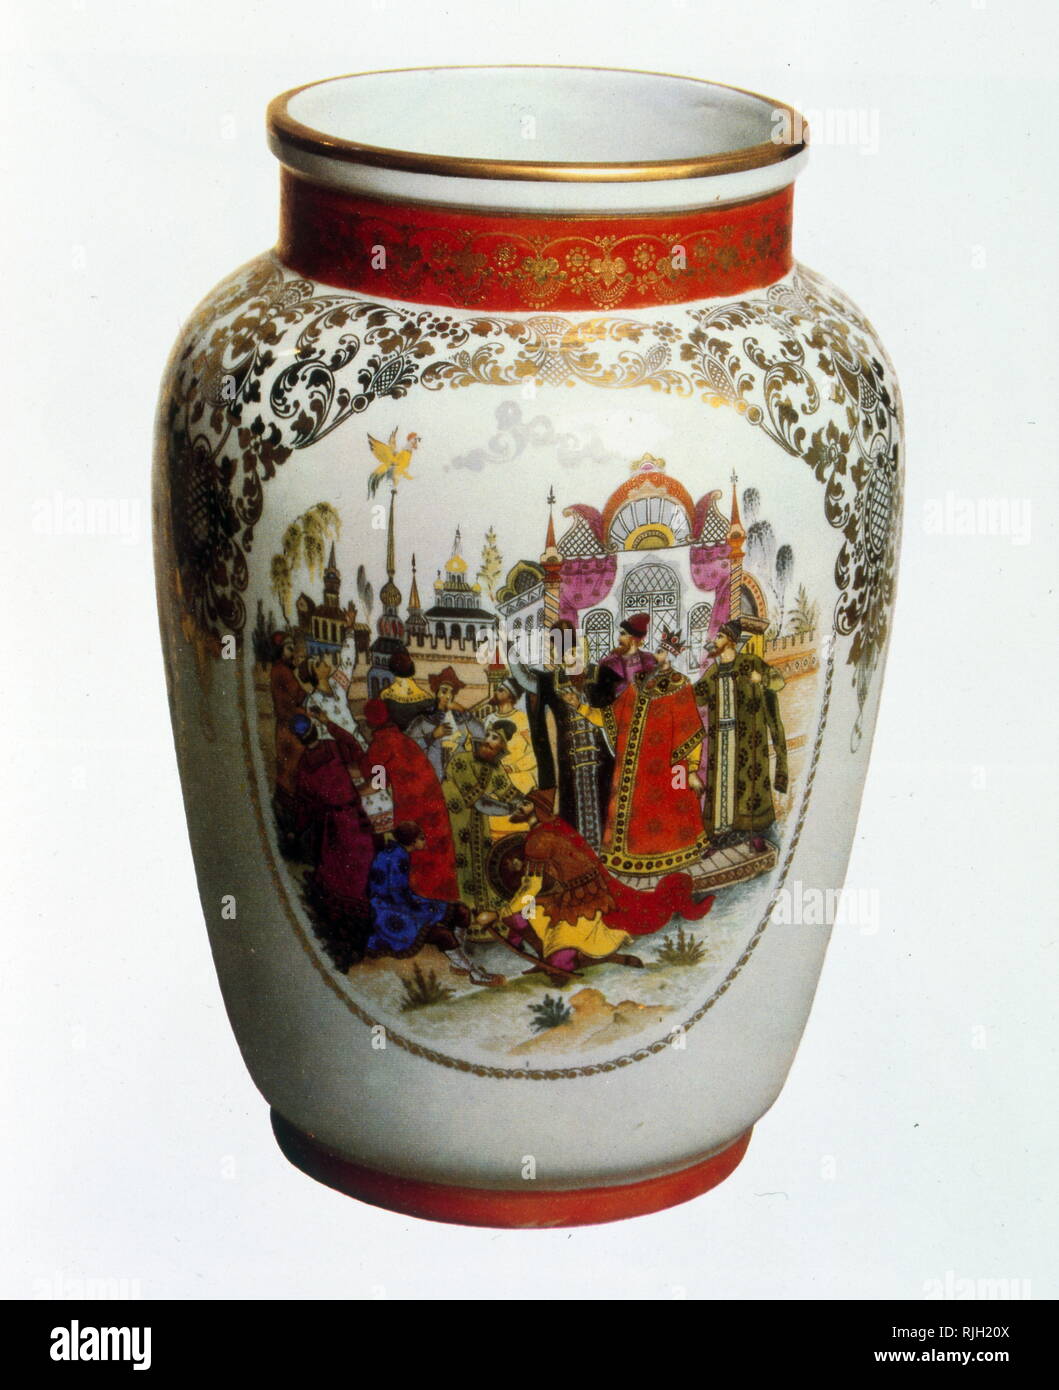 Commemorative Vase für Puschkin 100 1937, mit Darstellungen von Boris Godunow (Spiel von Alexander Puschkin, 1825) geschrieben. Alexander Sergejewitsch Puschkin (1799 - 1837), war ein Russischer Dichter, Dramatiker und Romancier der romantischen Epoche. Stockfoto